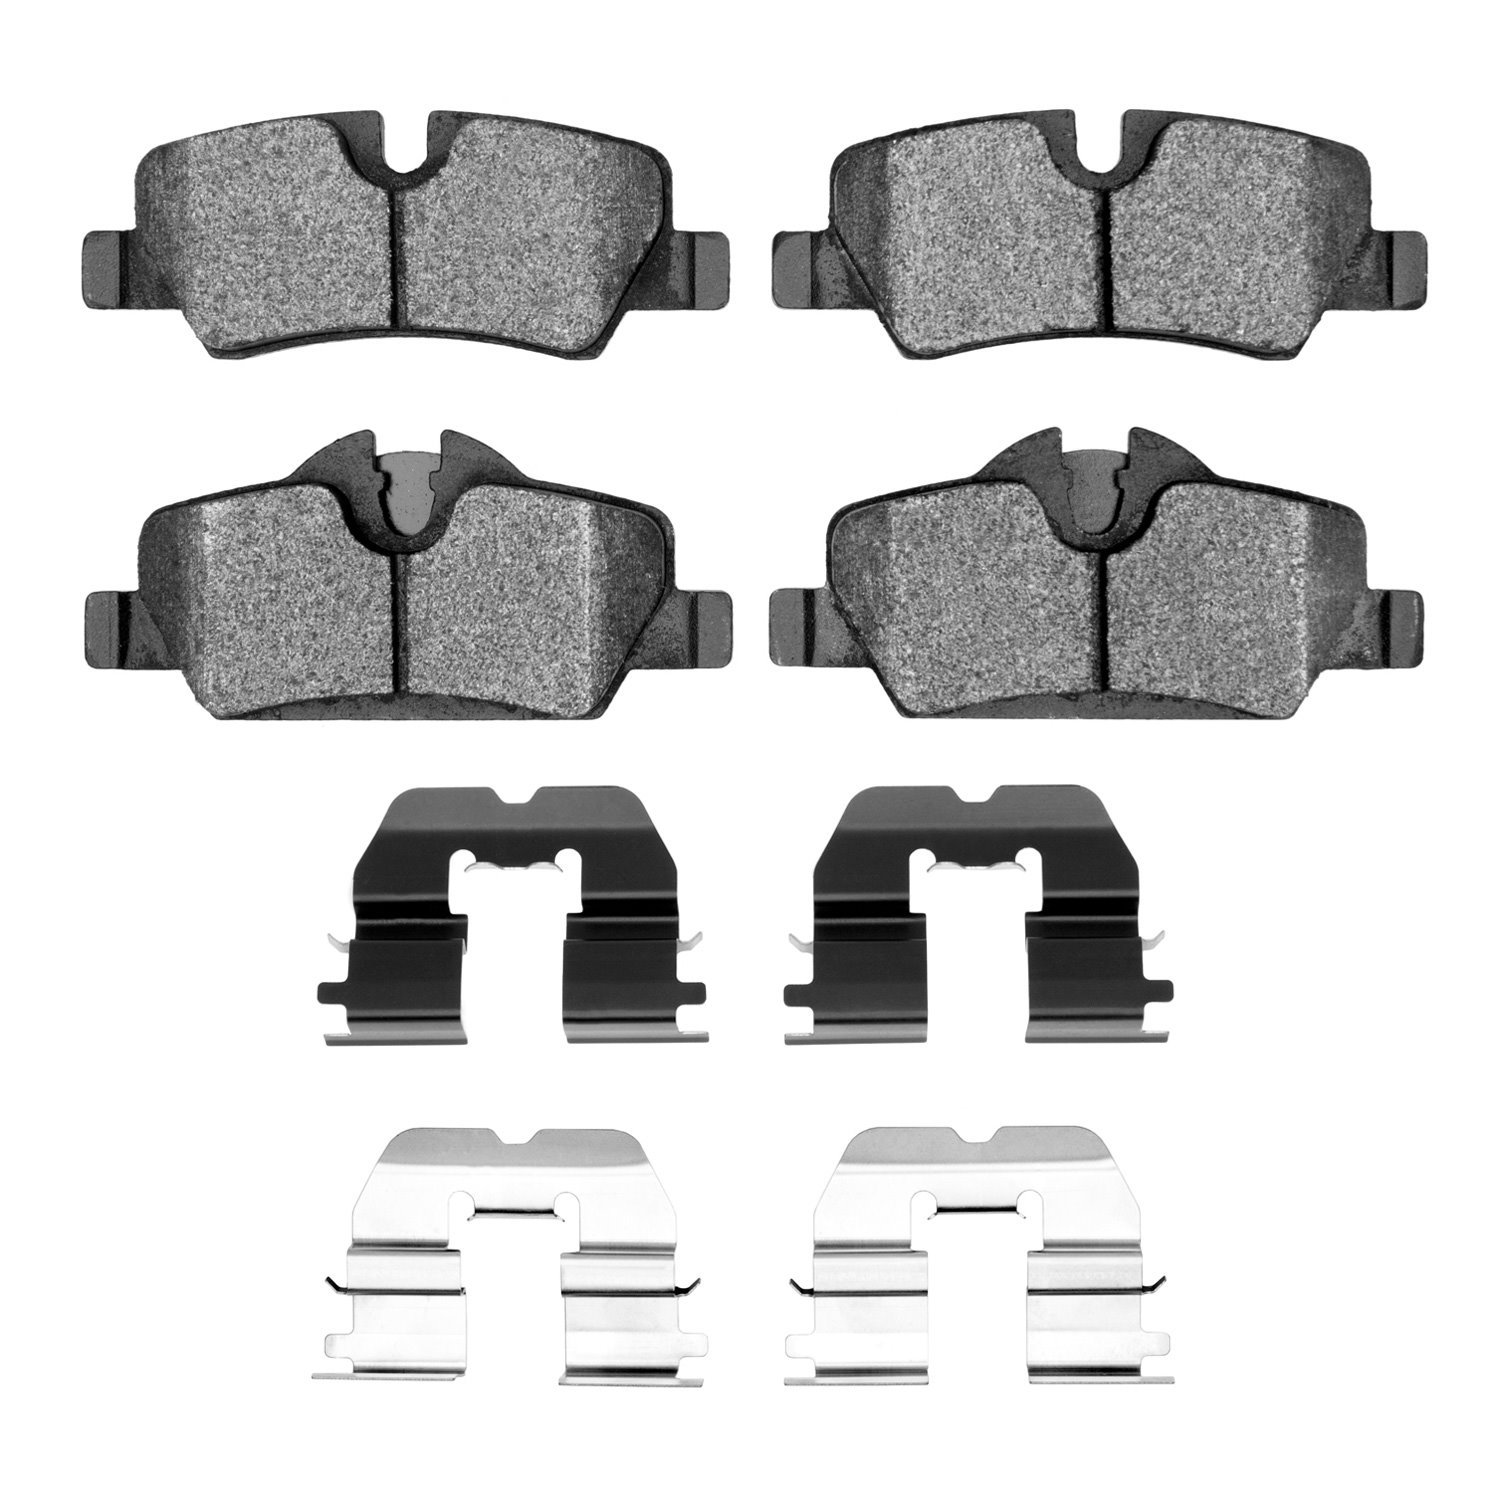 Ceramic Brake Pads & Hardware Kit, Fits Select Mini, Position: Rear